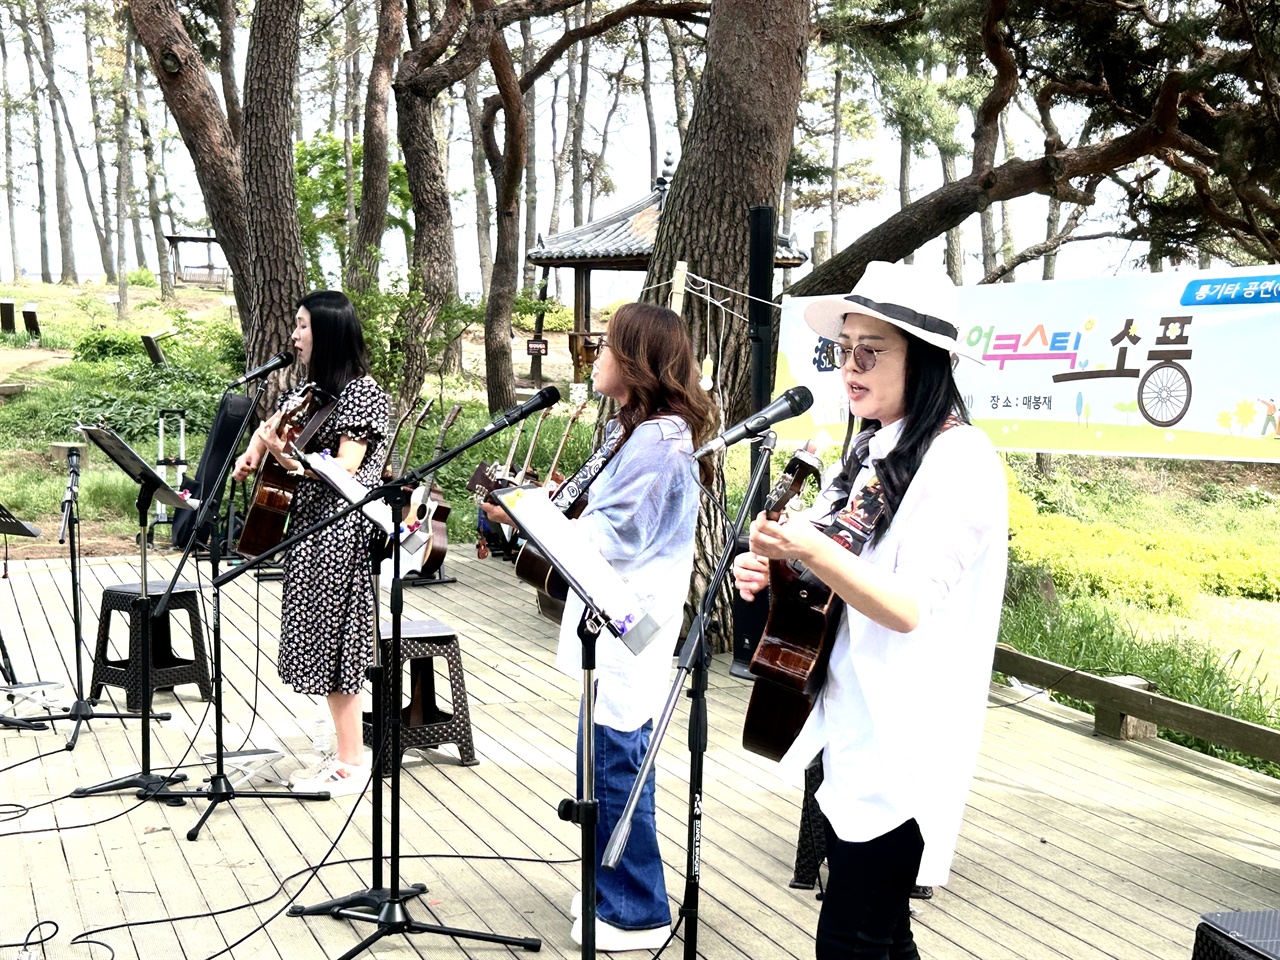 4월 마지막 주말을 맞아 홍성읍 매봉재에서는 작은 음악회가 열렸다.